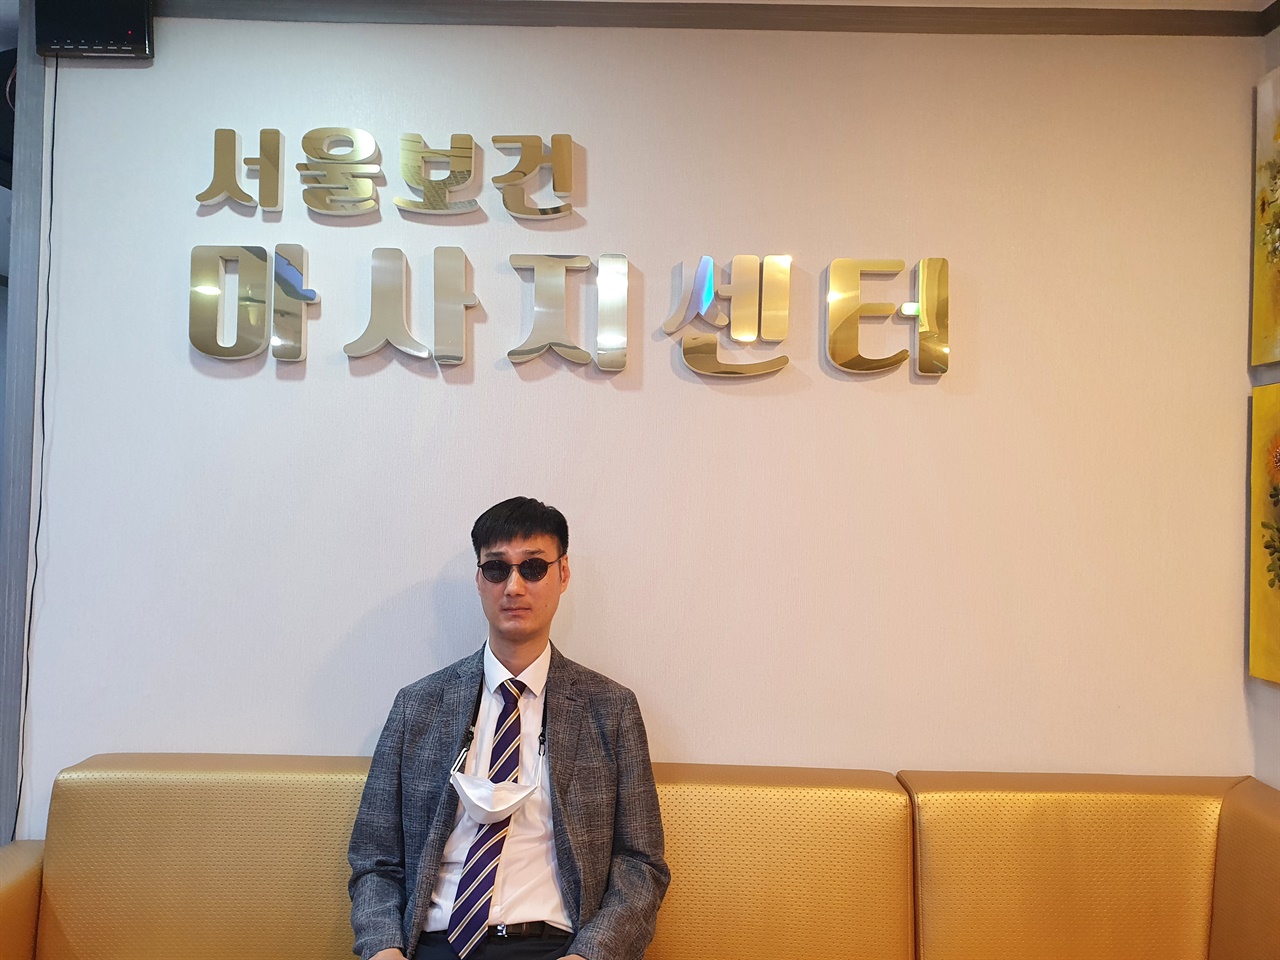 당산역에 위치한 서울보건 마사지센터에서 시각장애인 채수용씨를 인터뷰한 후 찍은 사진